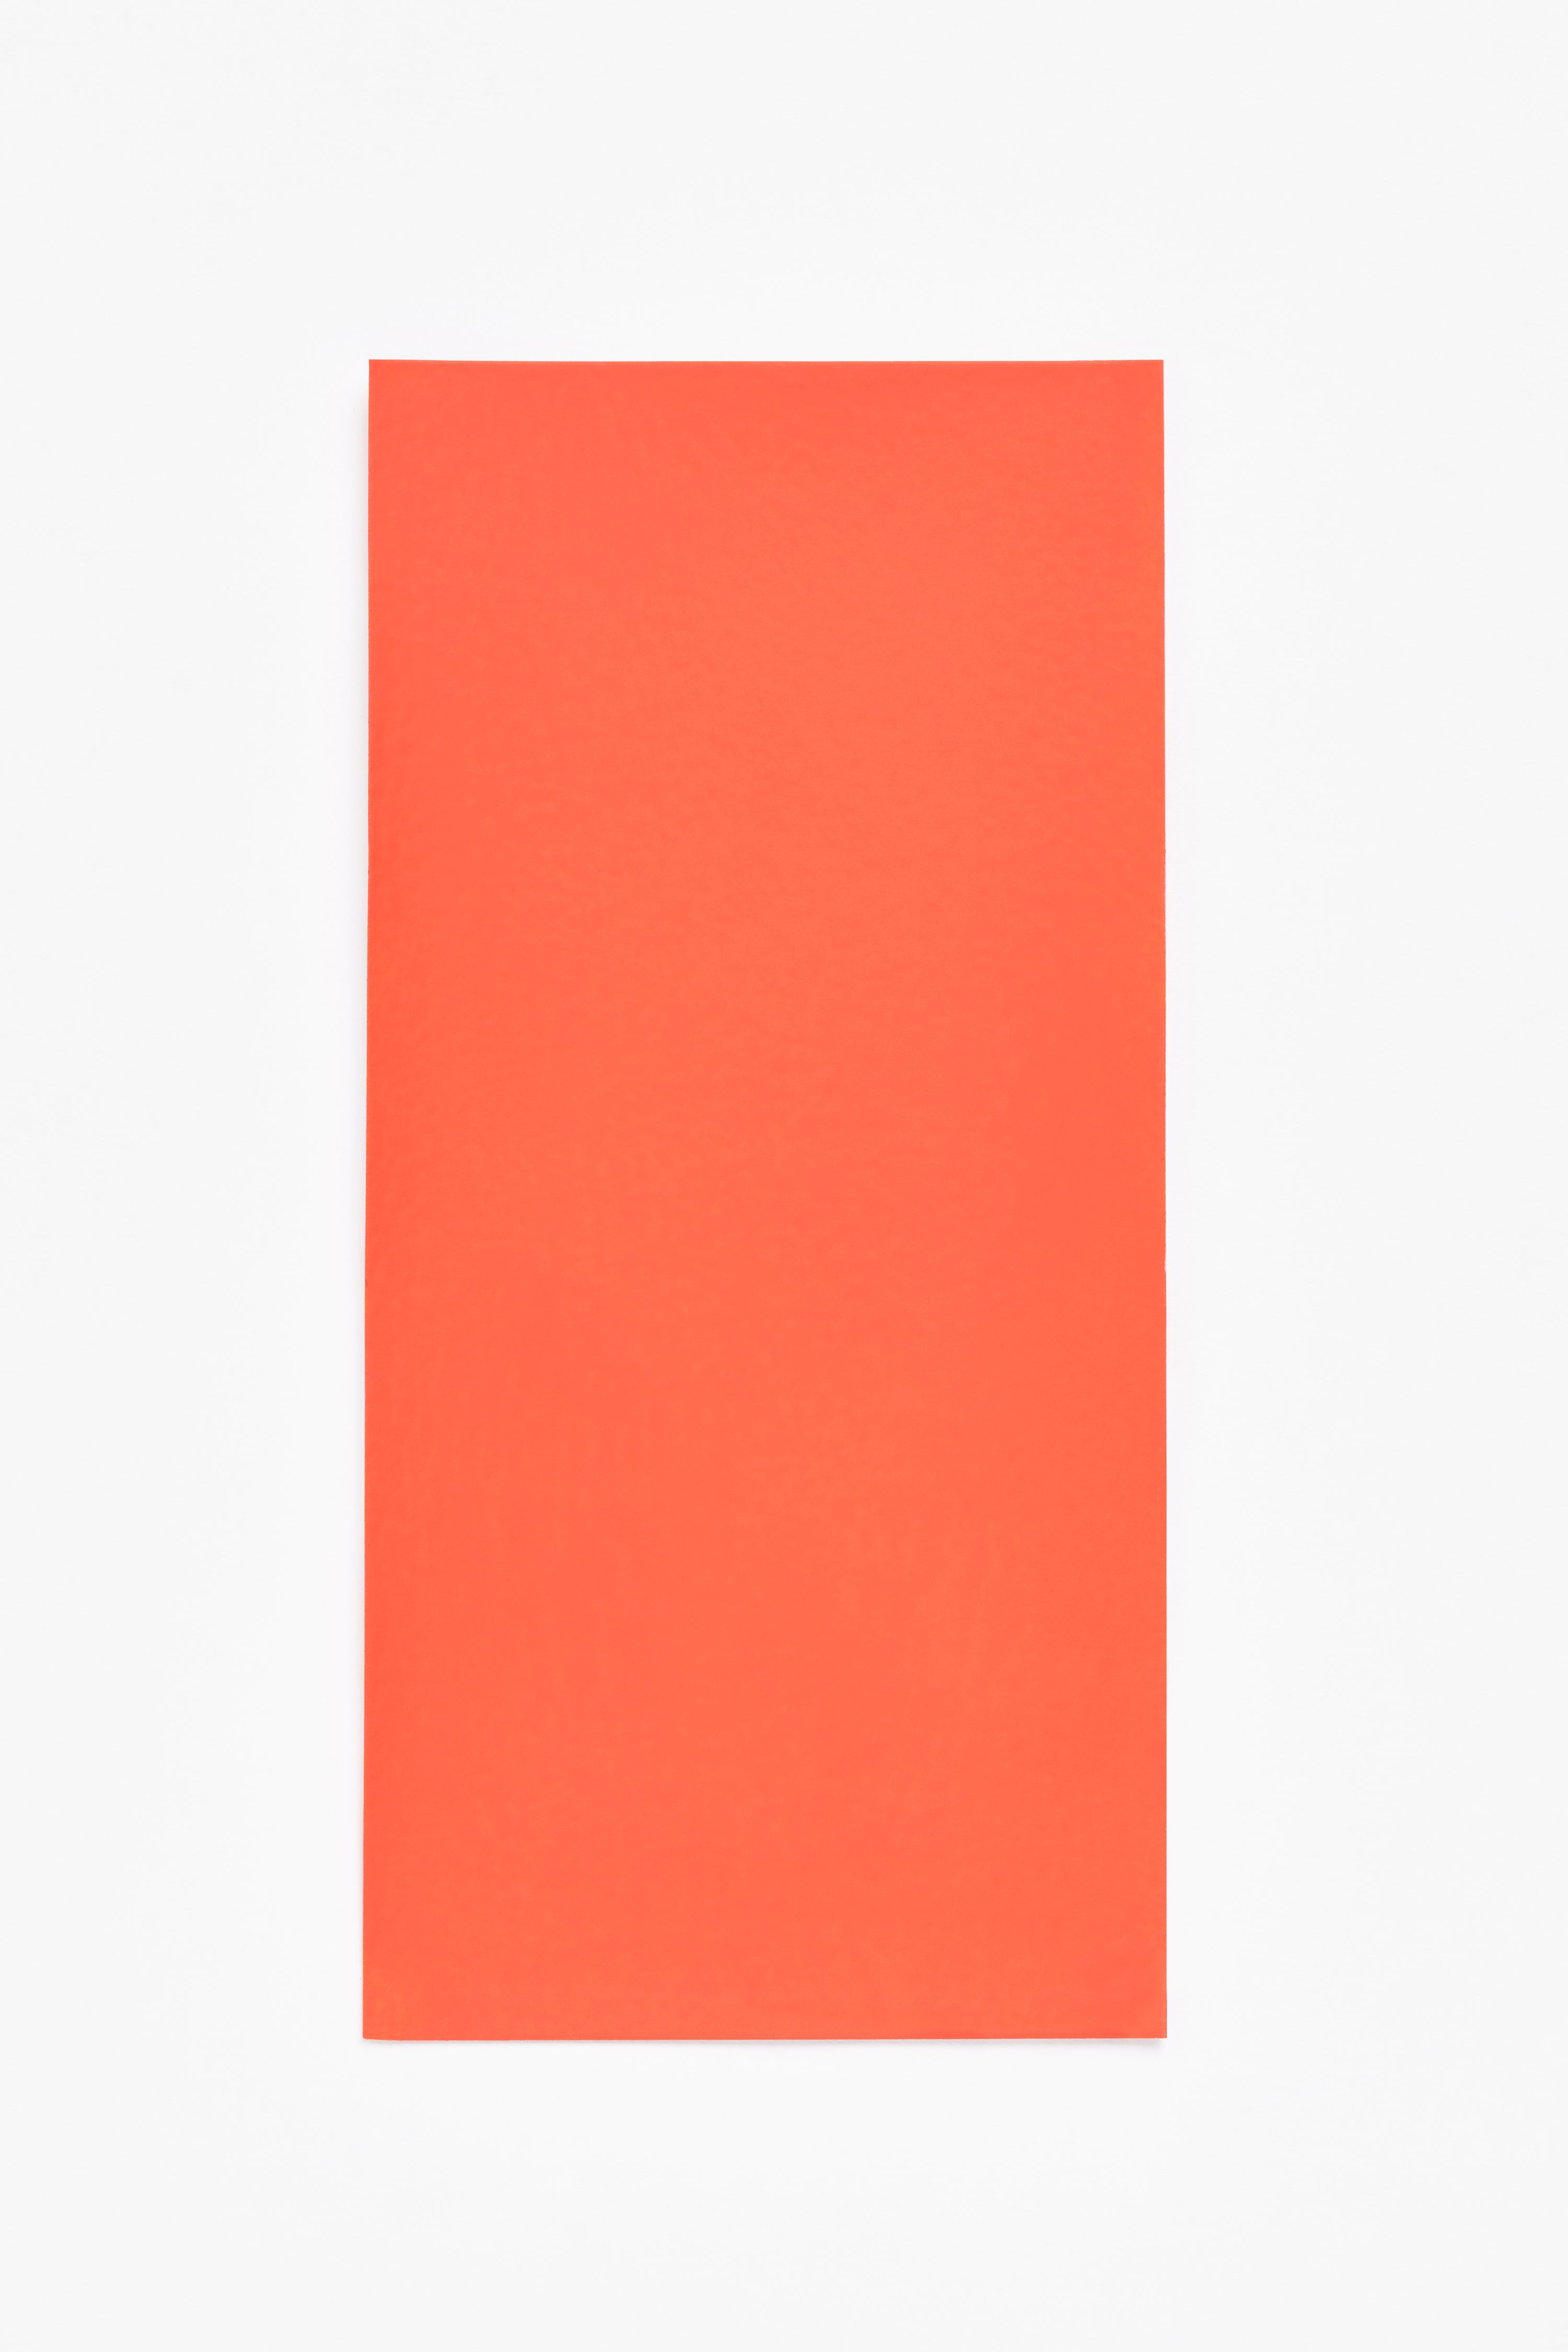 Nico — a paint colour developed by Studio Stefan Scholten for Blēo